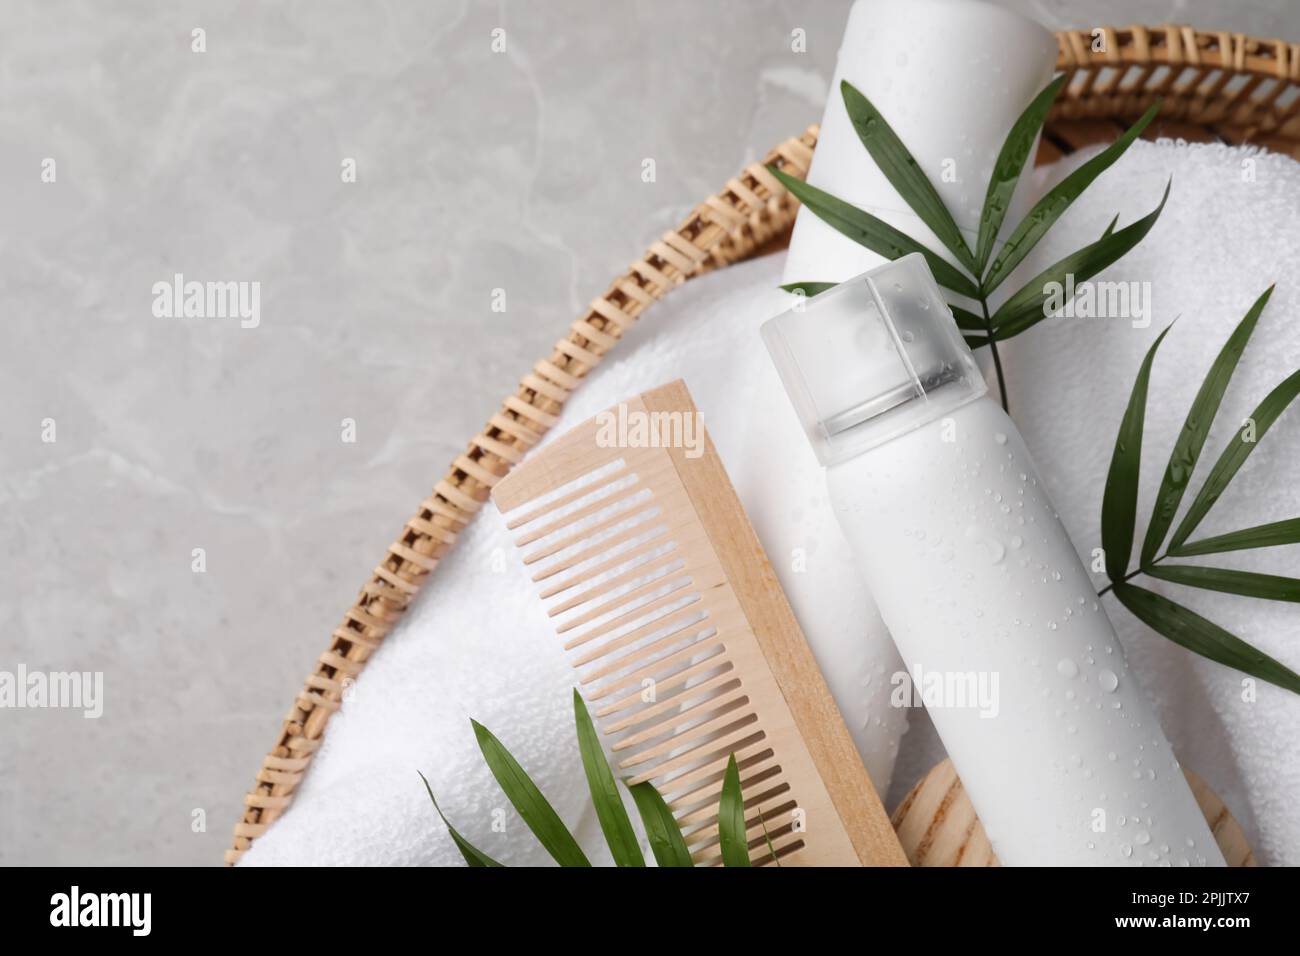 Trockenshampoo-Sprays, Handtuch und Holzkamm mit grünen Blättern im Korb auf hellgrauem Tisch, Draufsicht. Platz für Text Stockfoto